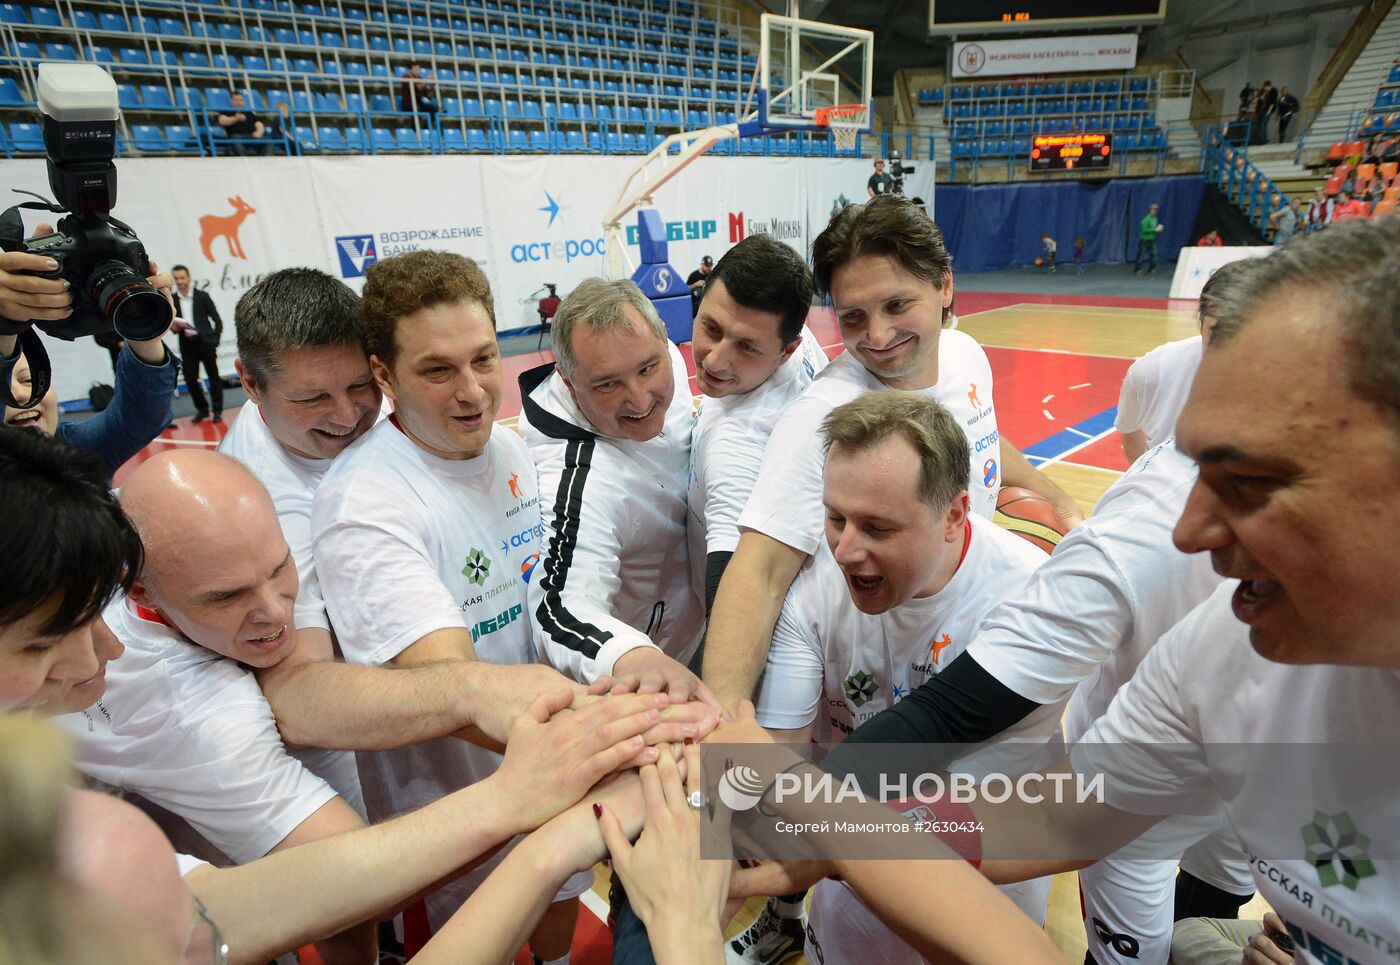 Благотворительный баскетбольный матч в поддержку подопечных фонда Гоши Куценко "Шаг вместе"